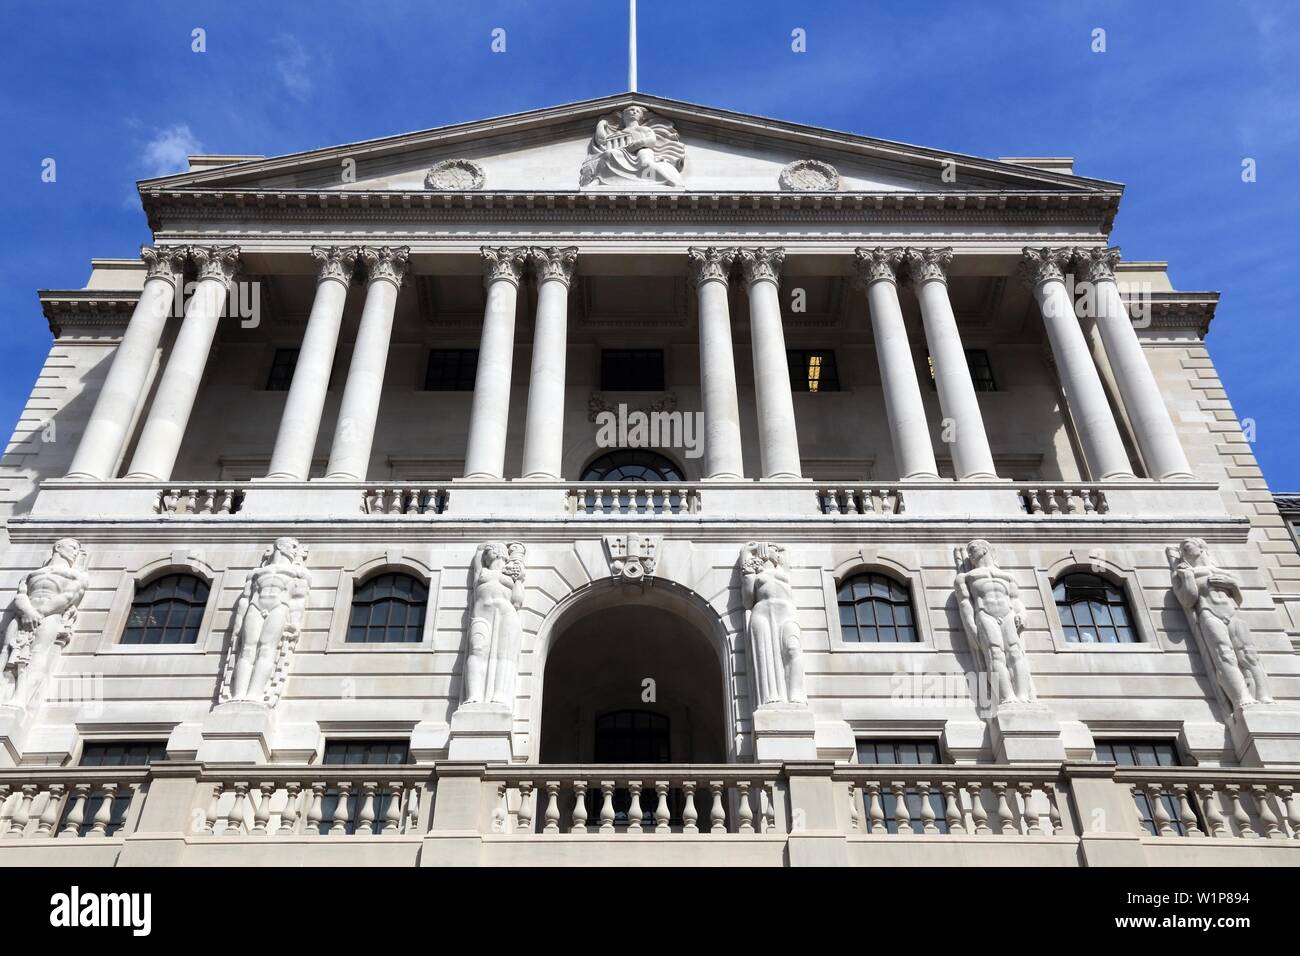 Bank of England - architecture landmark of London, UK. Stock Photo